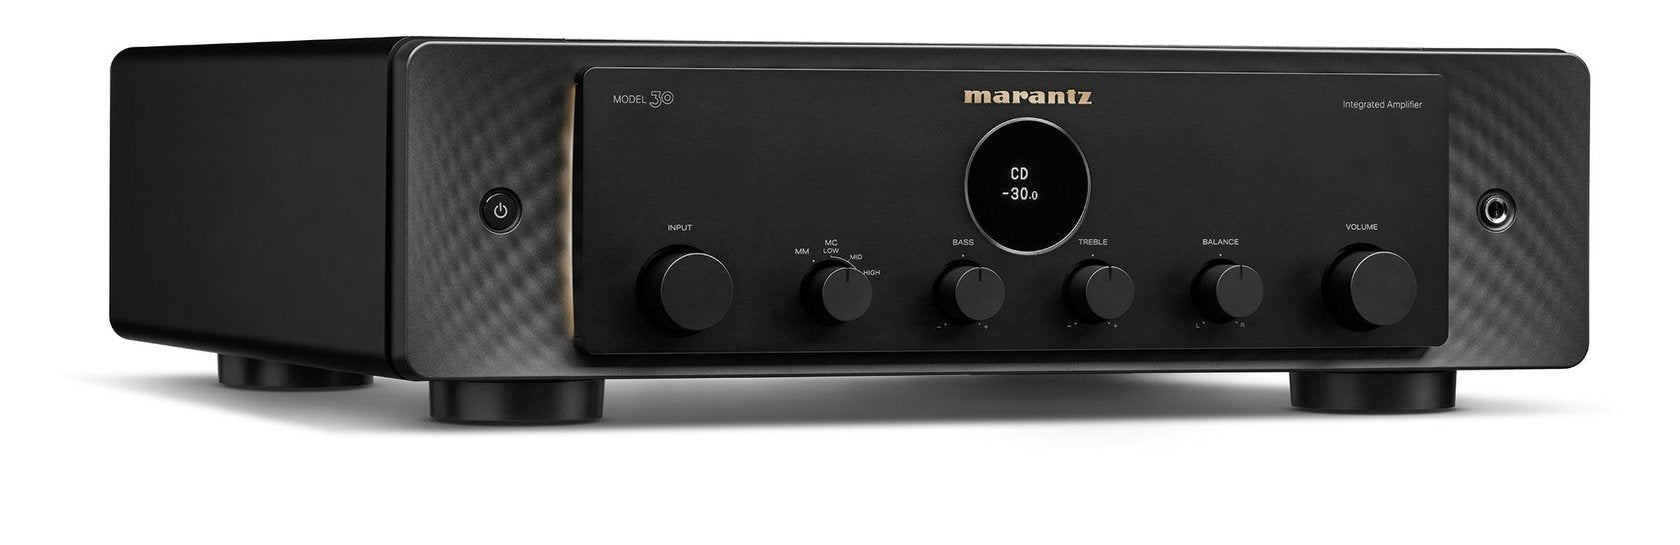 Marantz MODEL 30 stereovahvistin